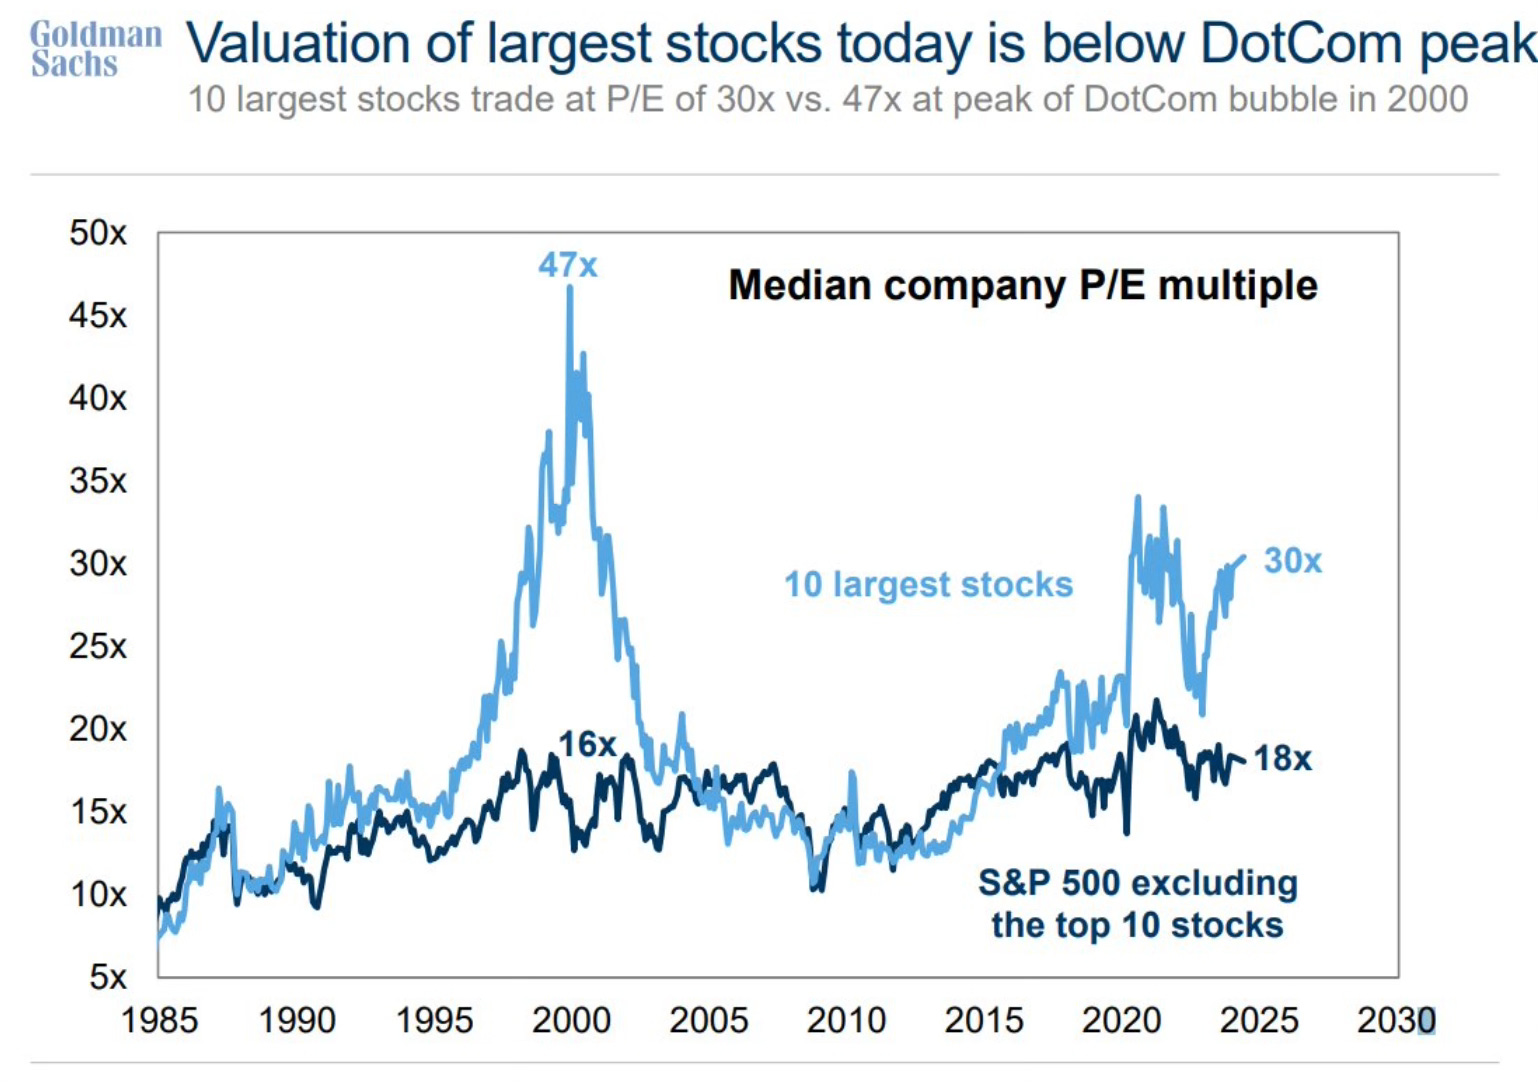 Largest Stocks P/E Then Vs. Now